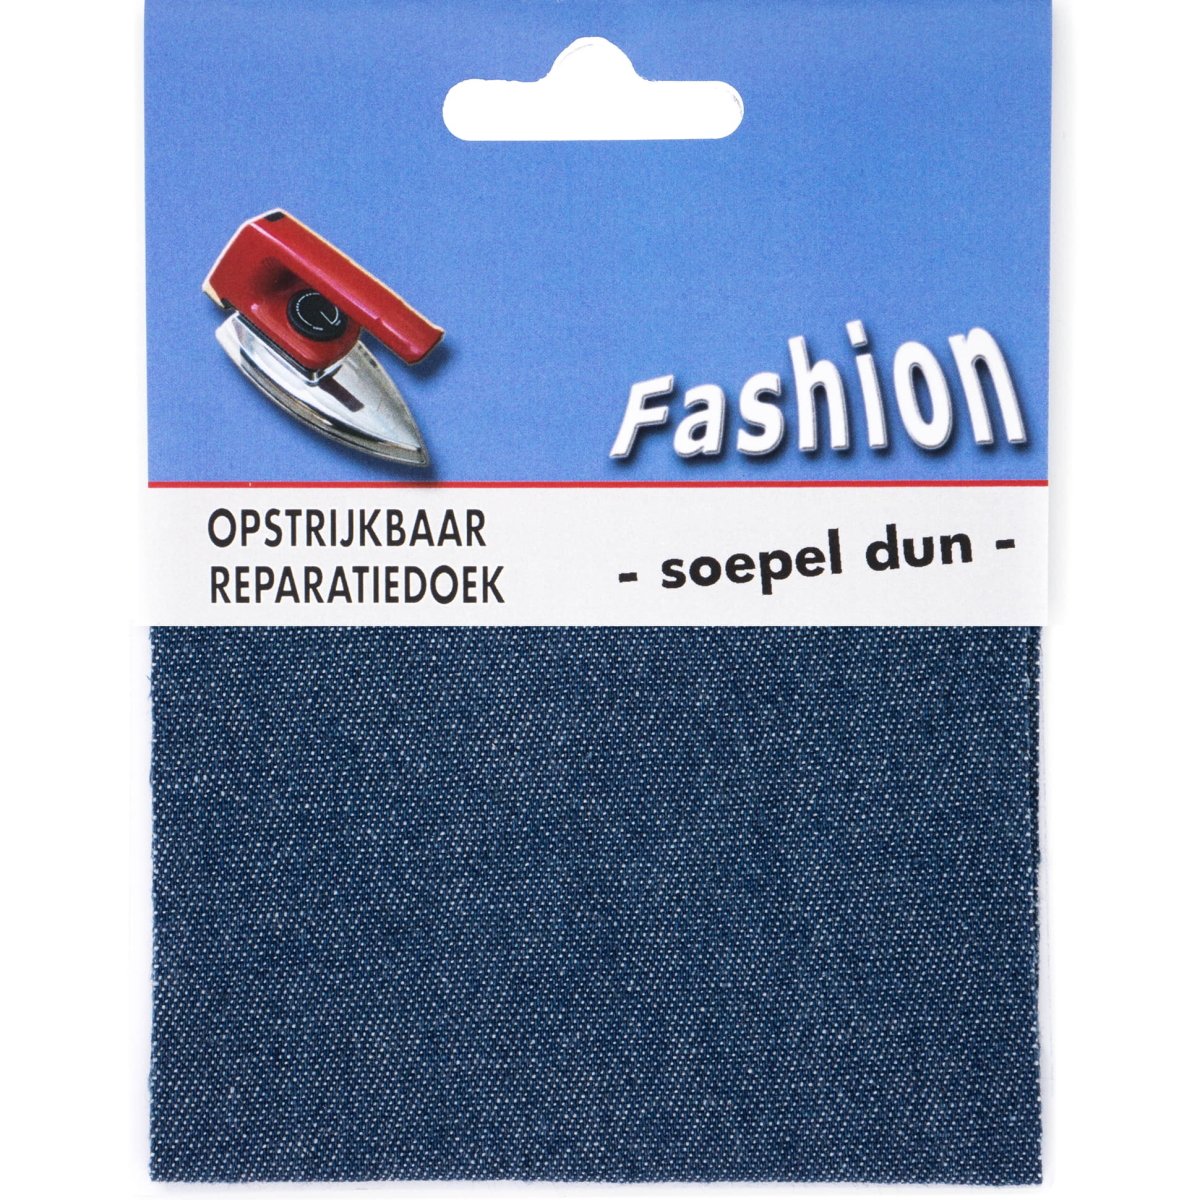 Reparatiedoek jeans soepel dun Fashion opstrijkbaar 10x40cm Repraratiedoek 117504 - Fourniturenkraam.nl